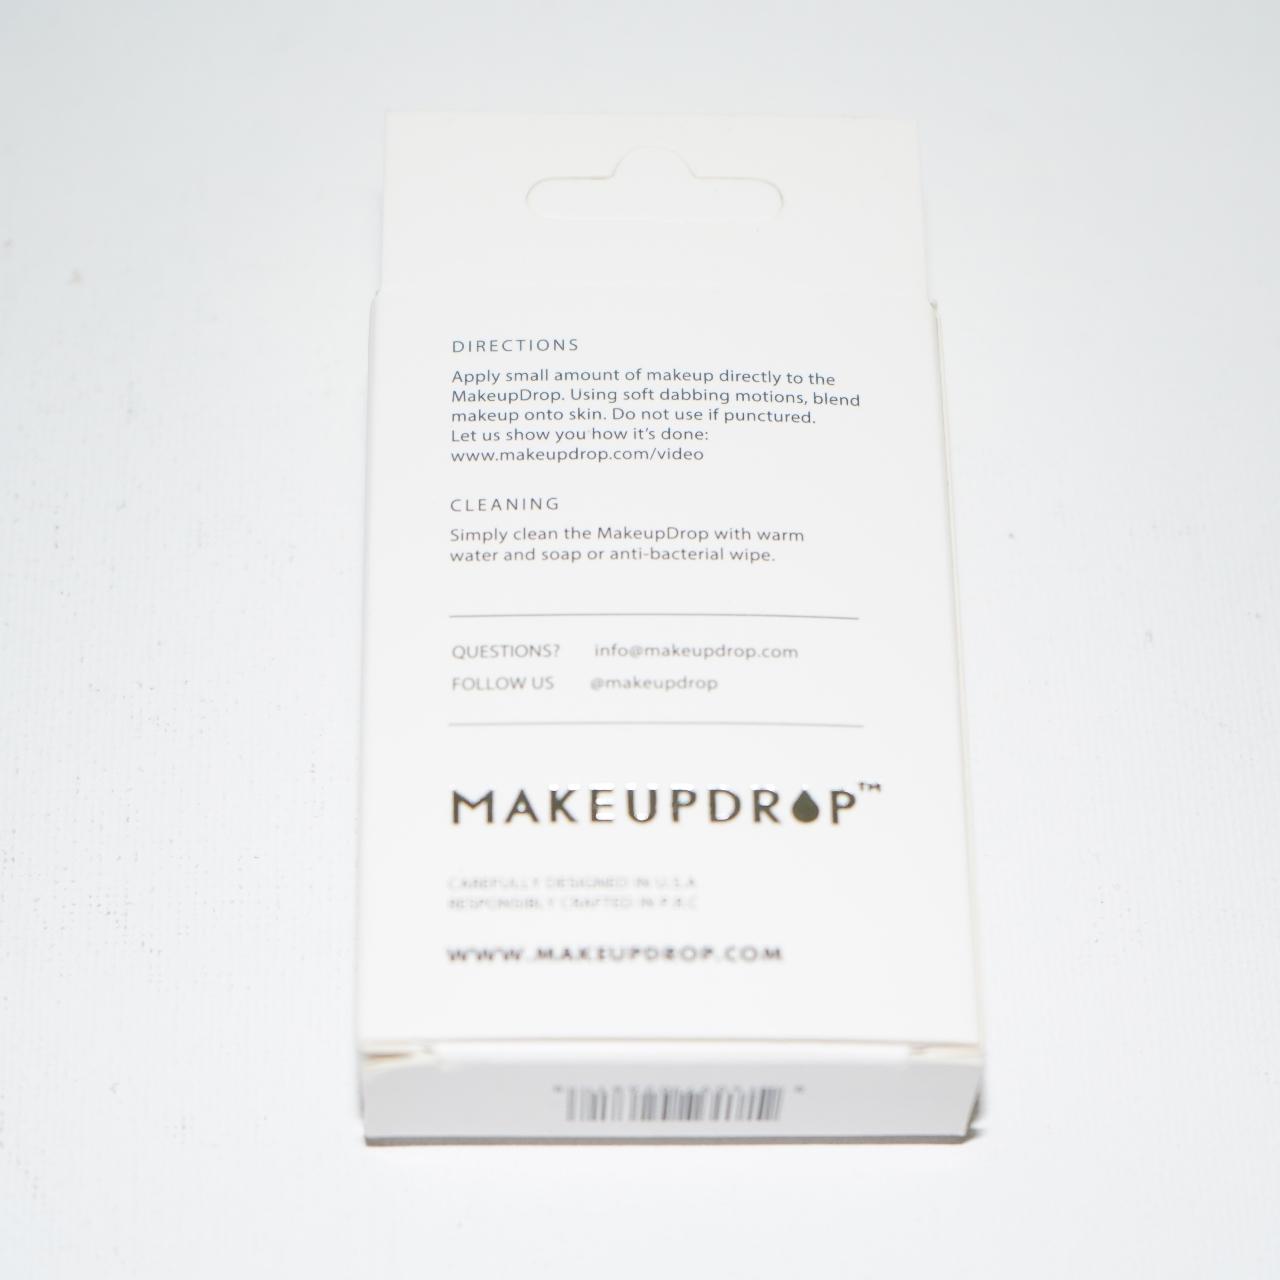 Product Image 3 - Makeup Drop Silicone Makeup Applicator
Don't